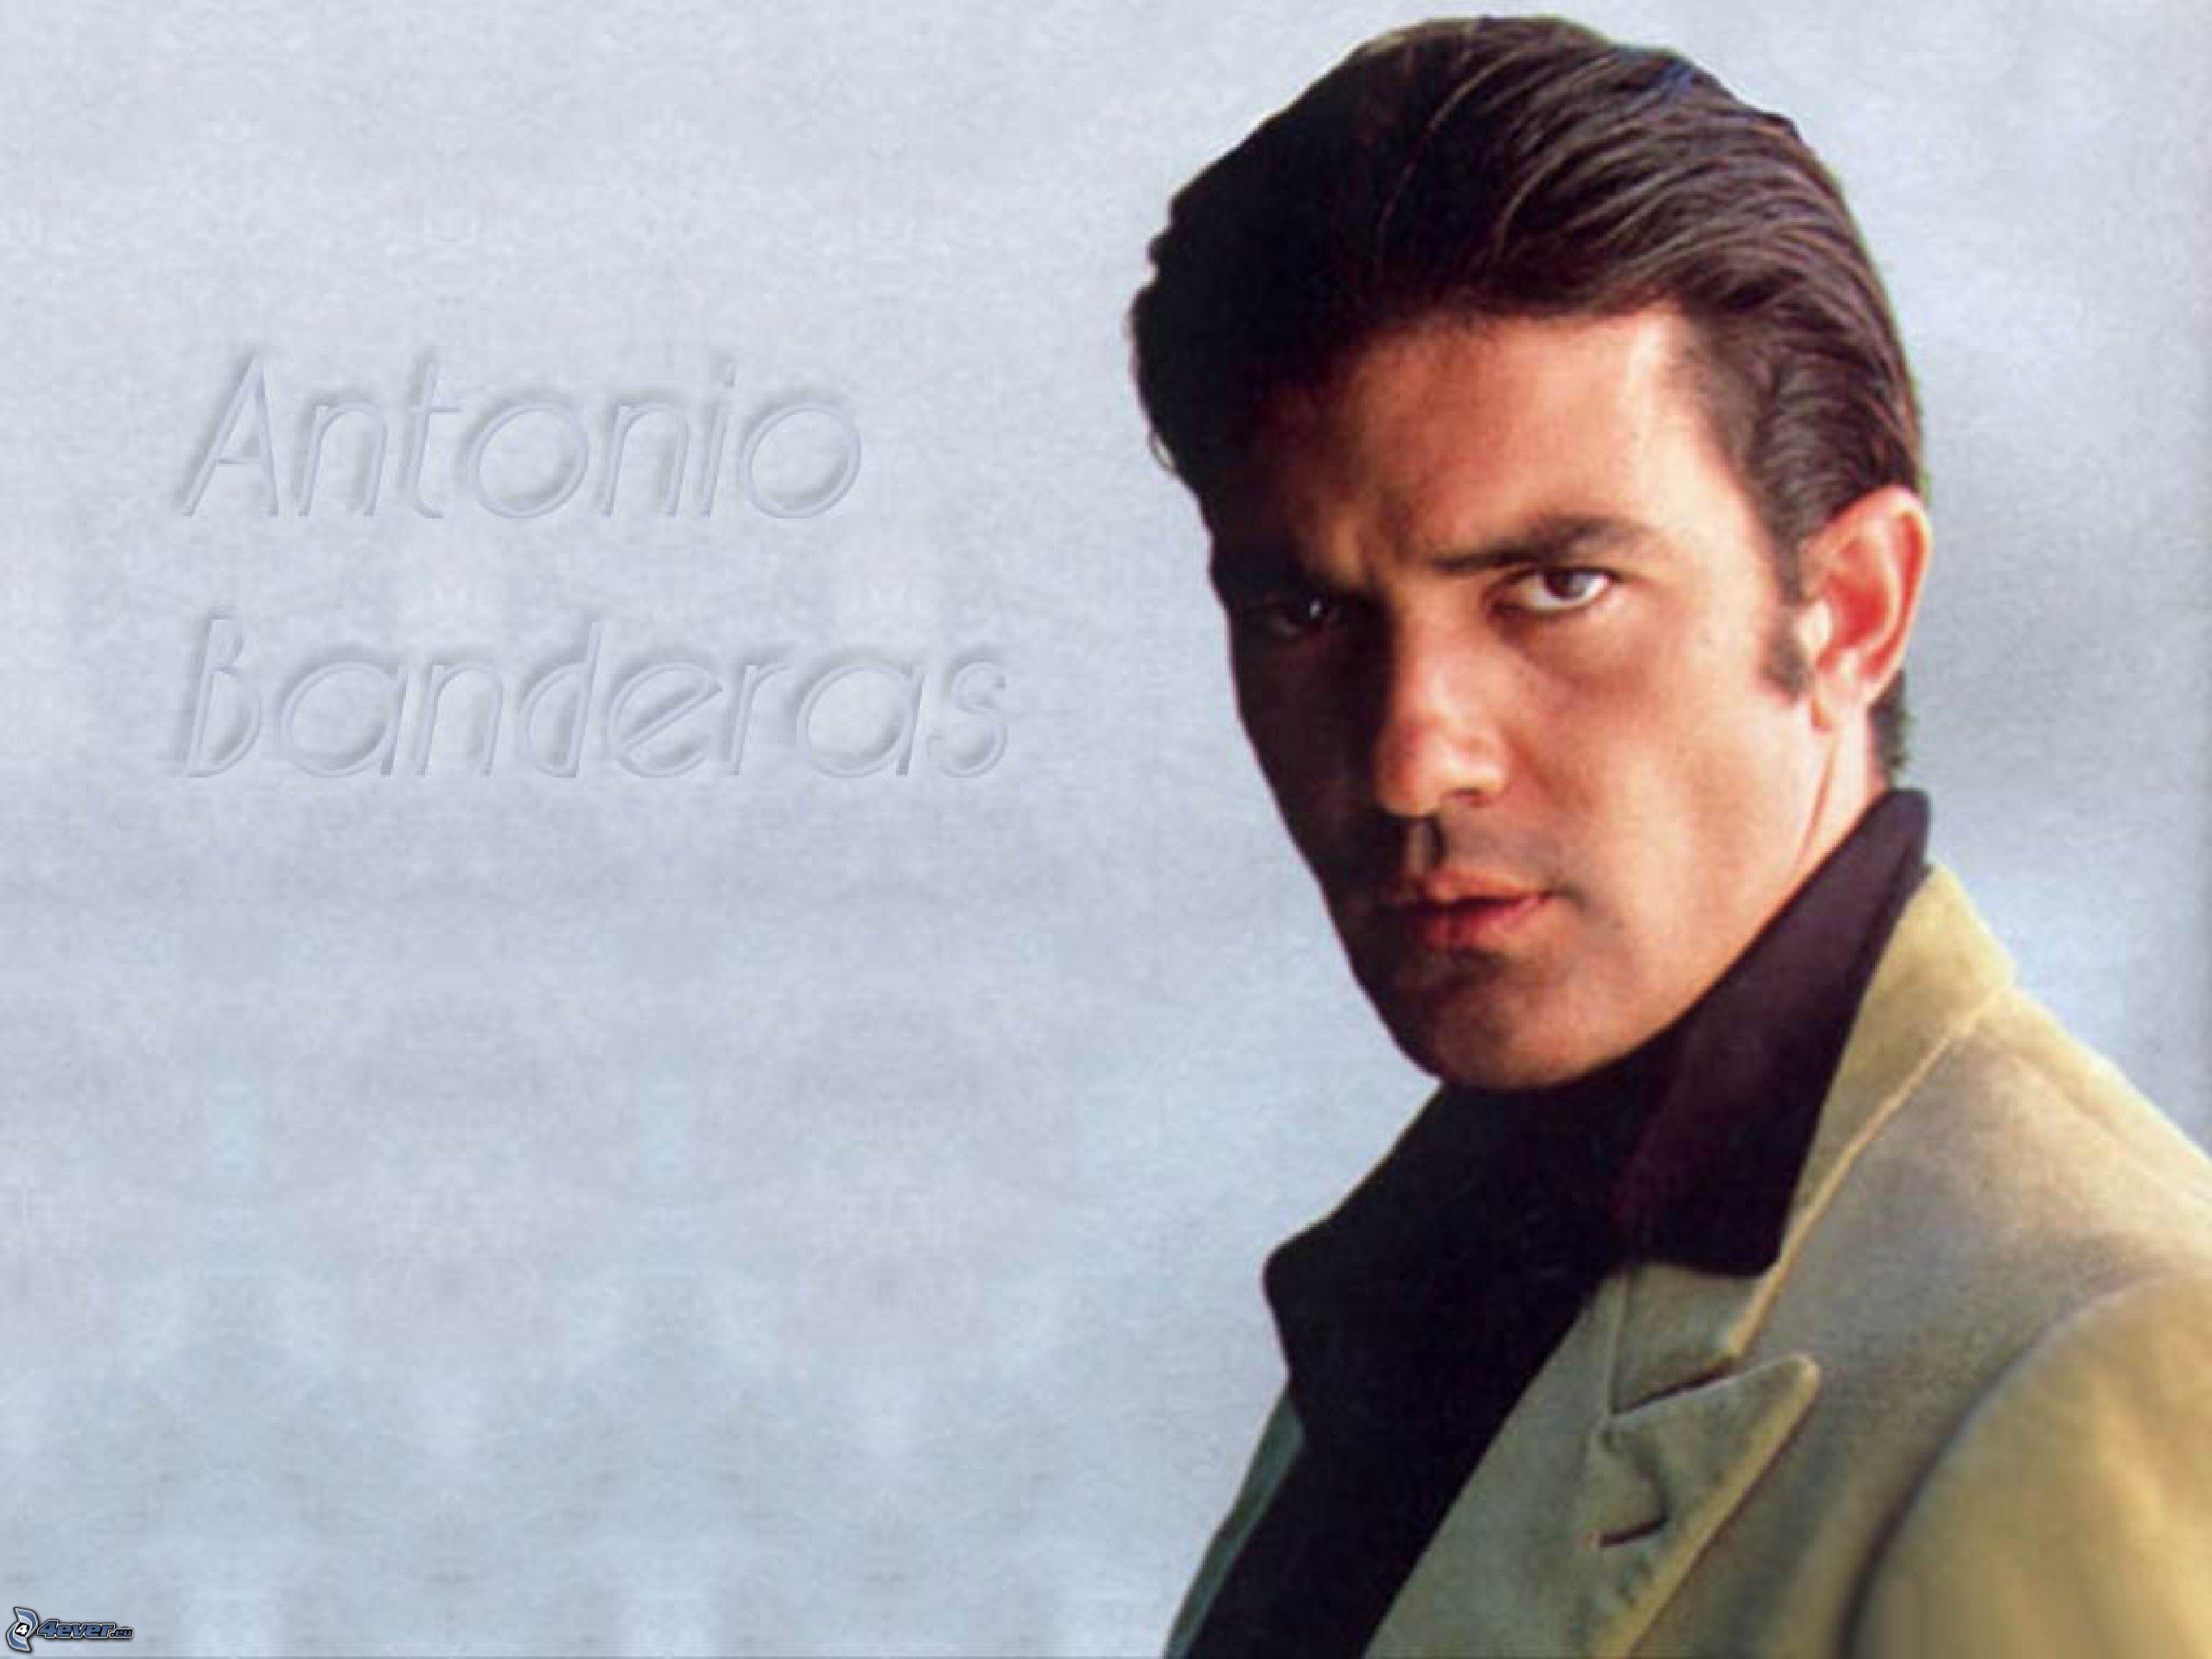 Antonio Banderas Wallpapers